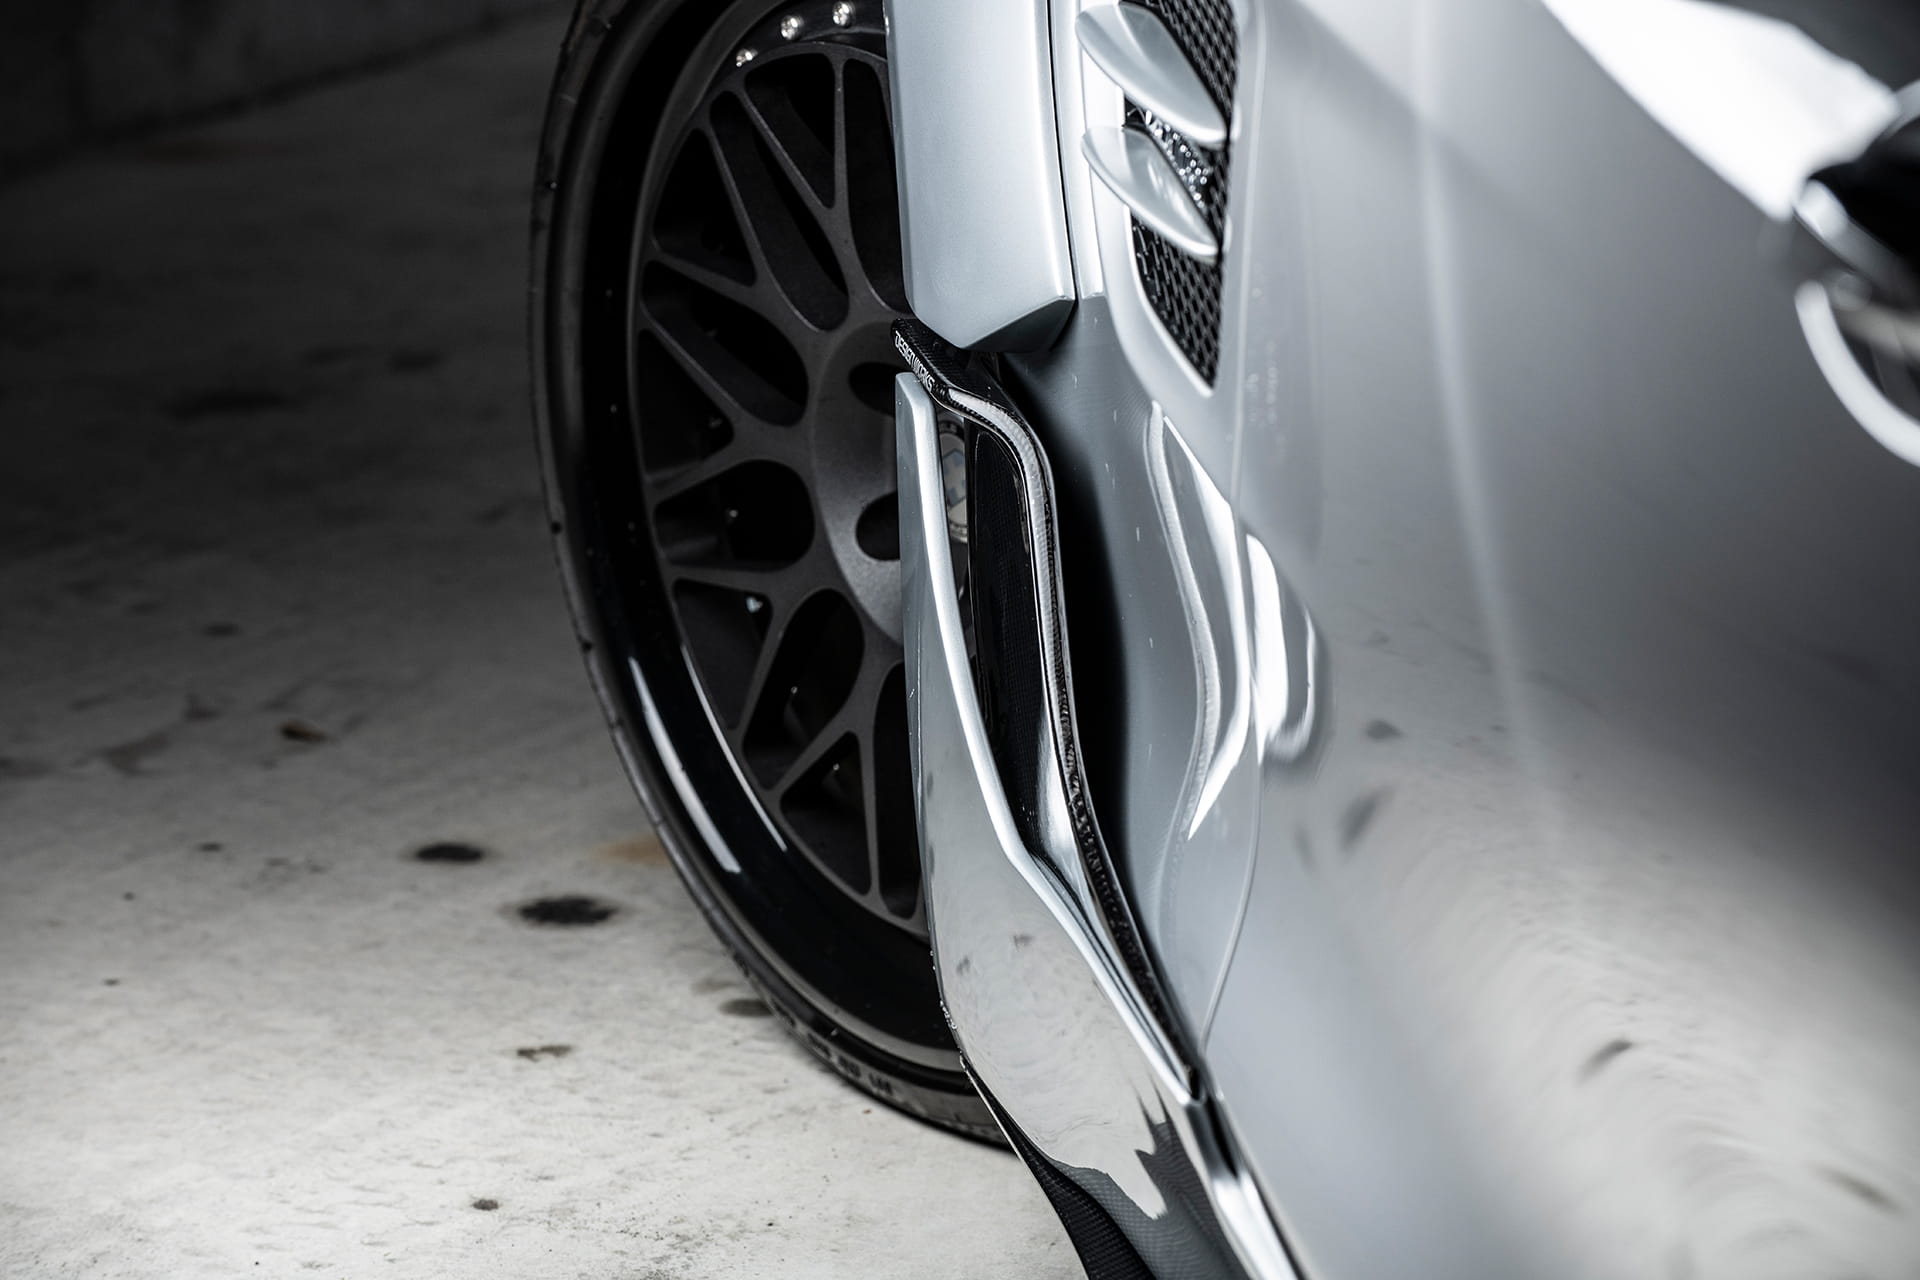 DESIGN WORKS Mercedes-AMG GT